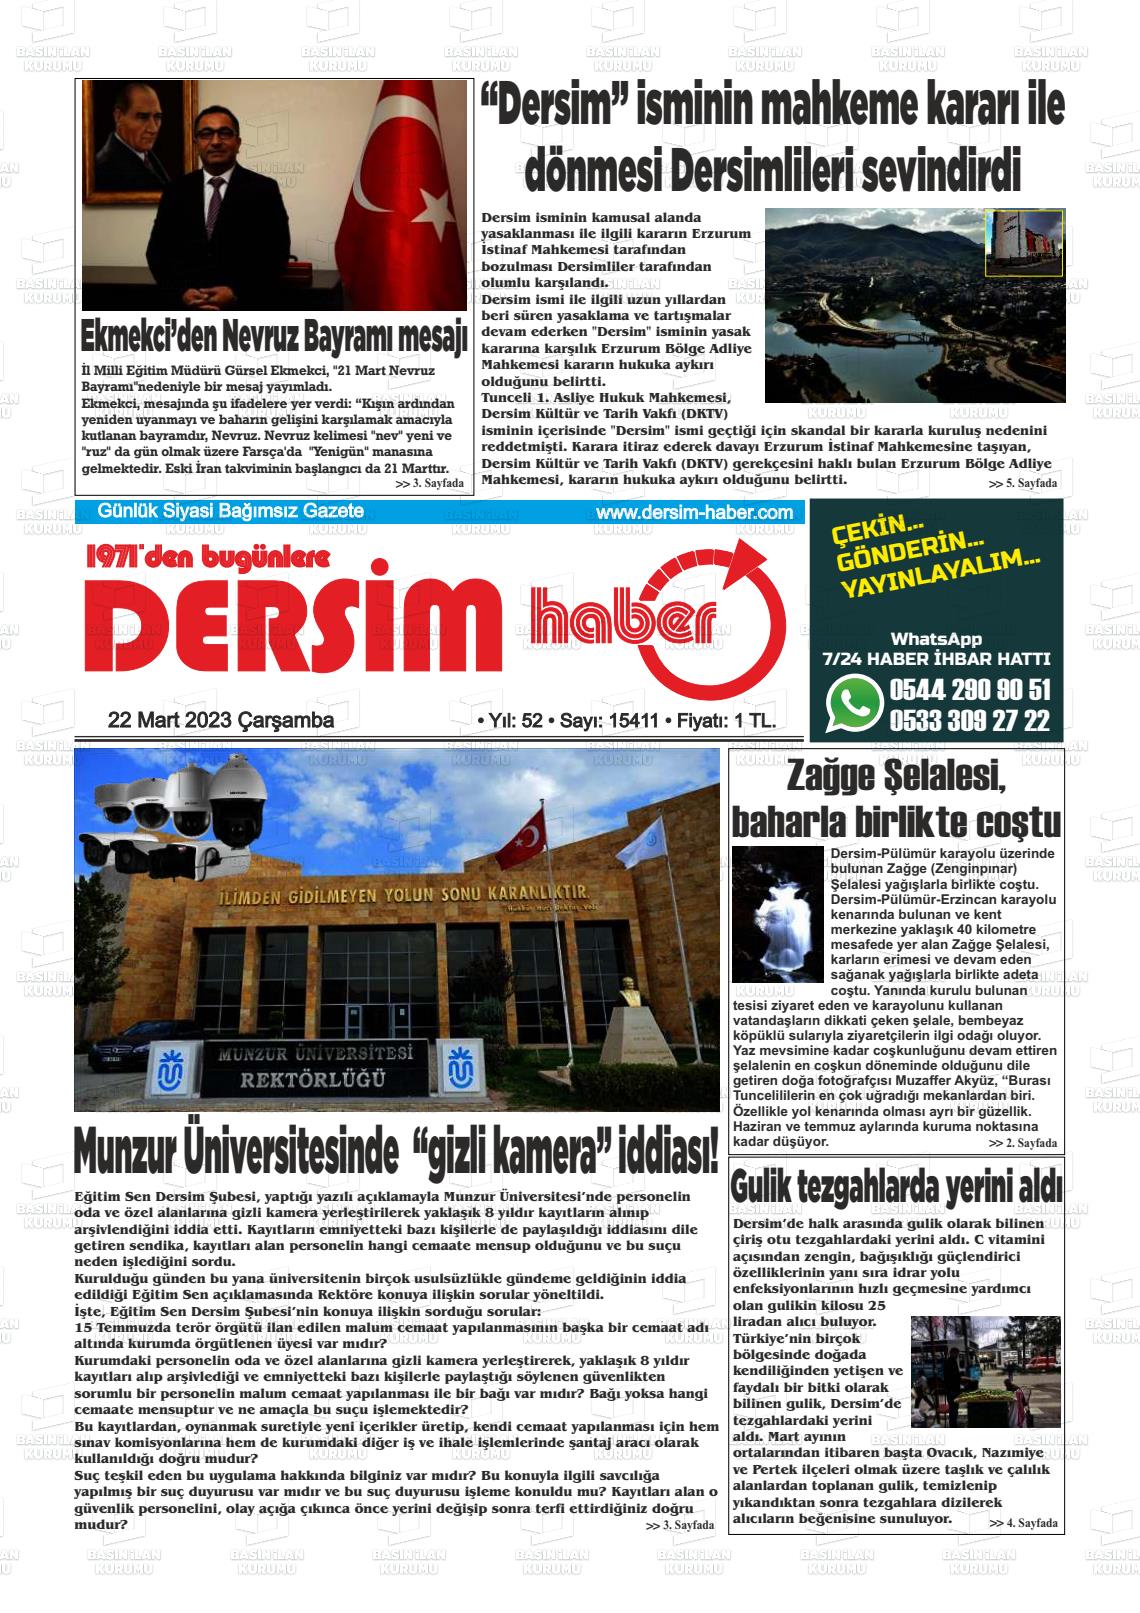 22 Mart 2023 DERSİM HABER Gazete Manşeti